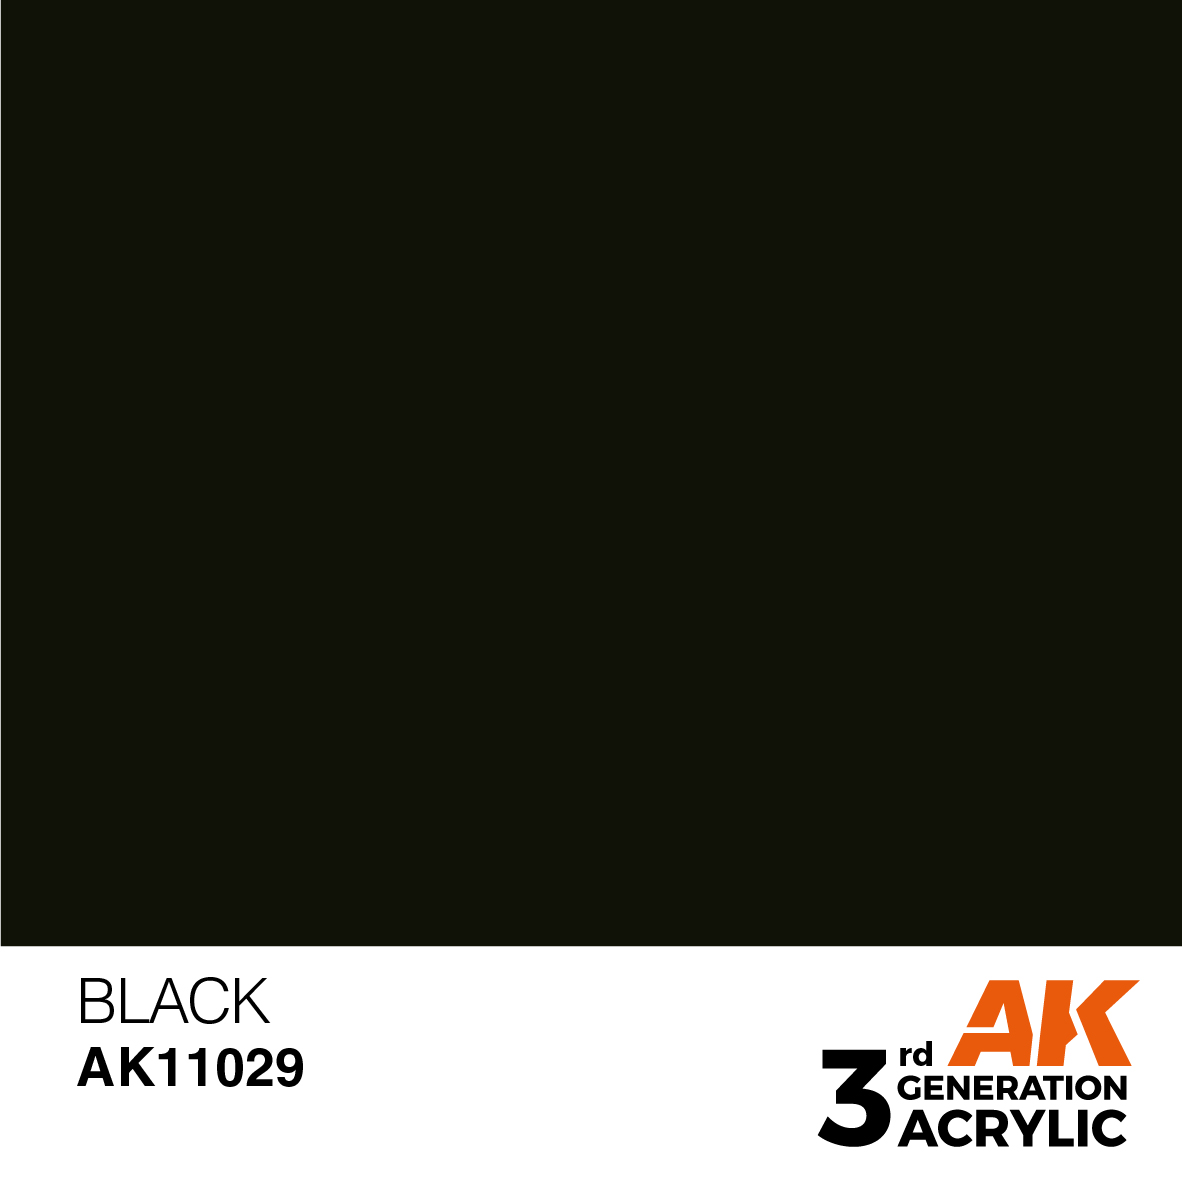 Alicate de corte. AK INTERACTIVE AK9009